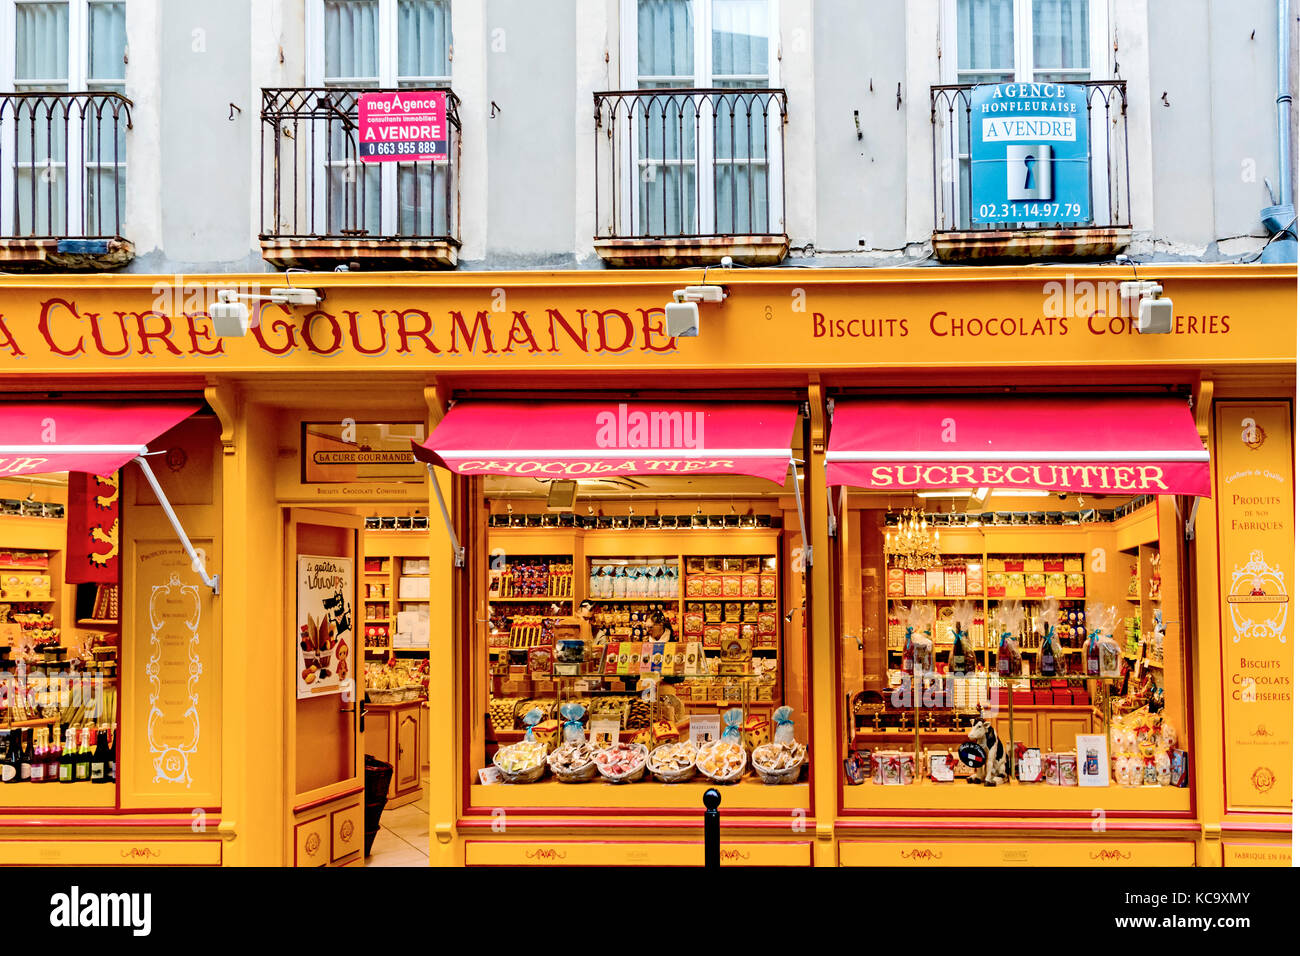 Honfleur (France): Shop with typical and logal products of Normandy; Geschäft mit typischen Produkten der Normandie; Stock Photo